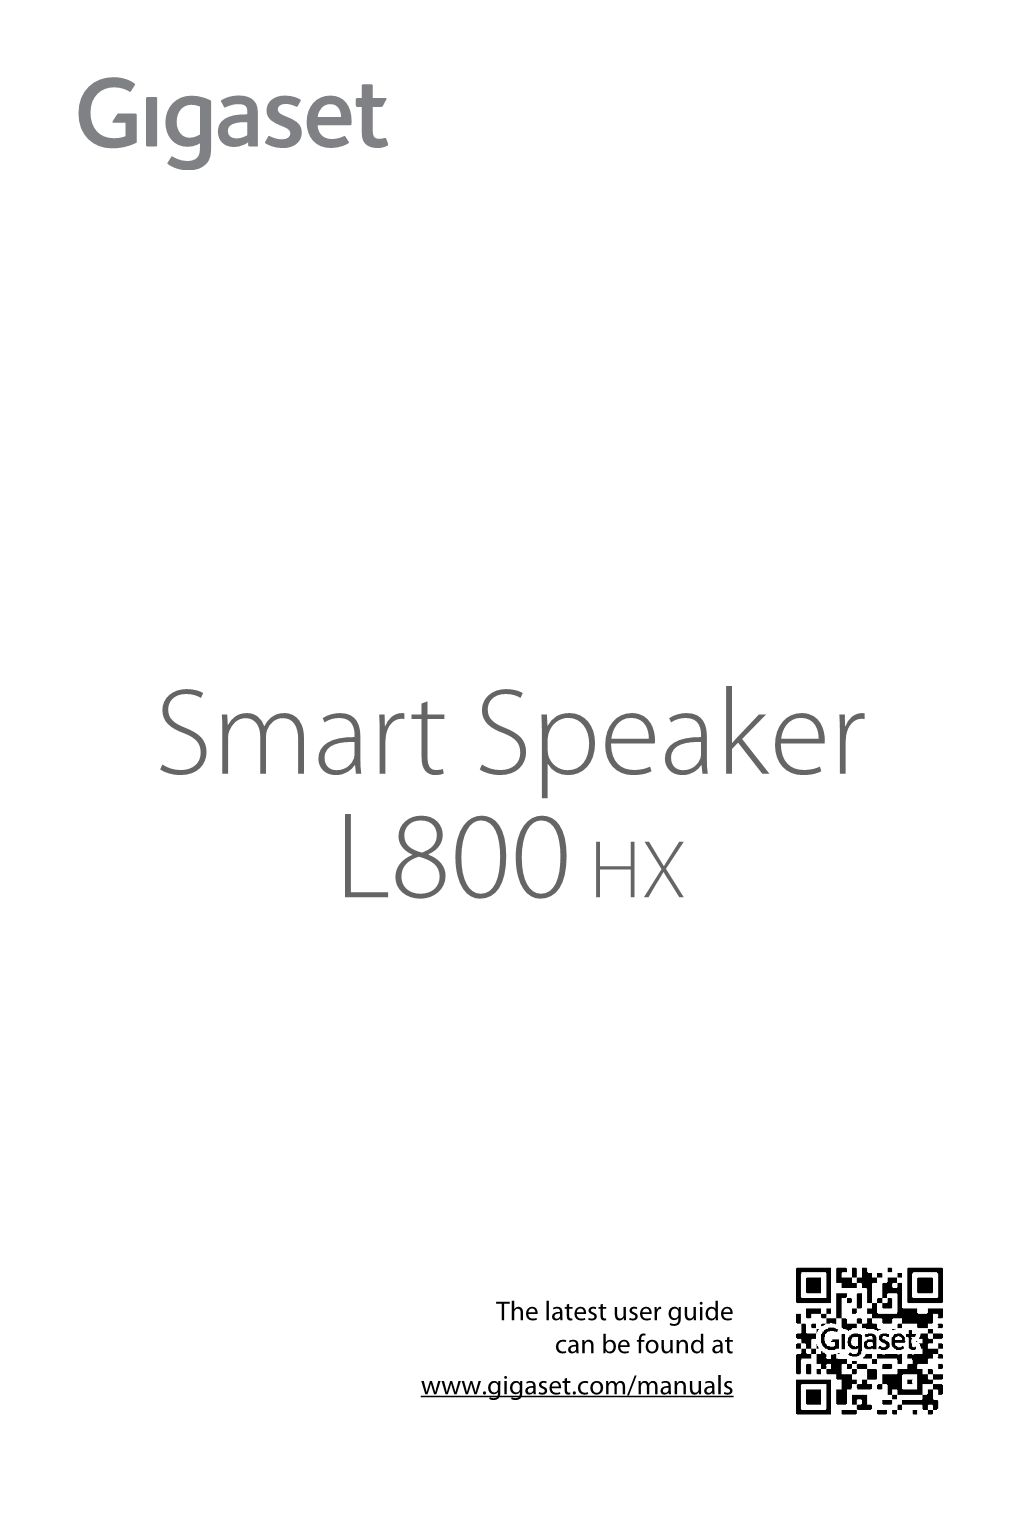 Gigaset Smart Speaker L800HX / LUG IE-UK En / A31008-N2564-R101-2-4N19 / Cover Front Bw.Fm / 6/3/19